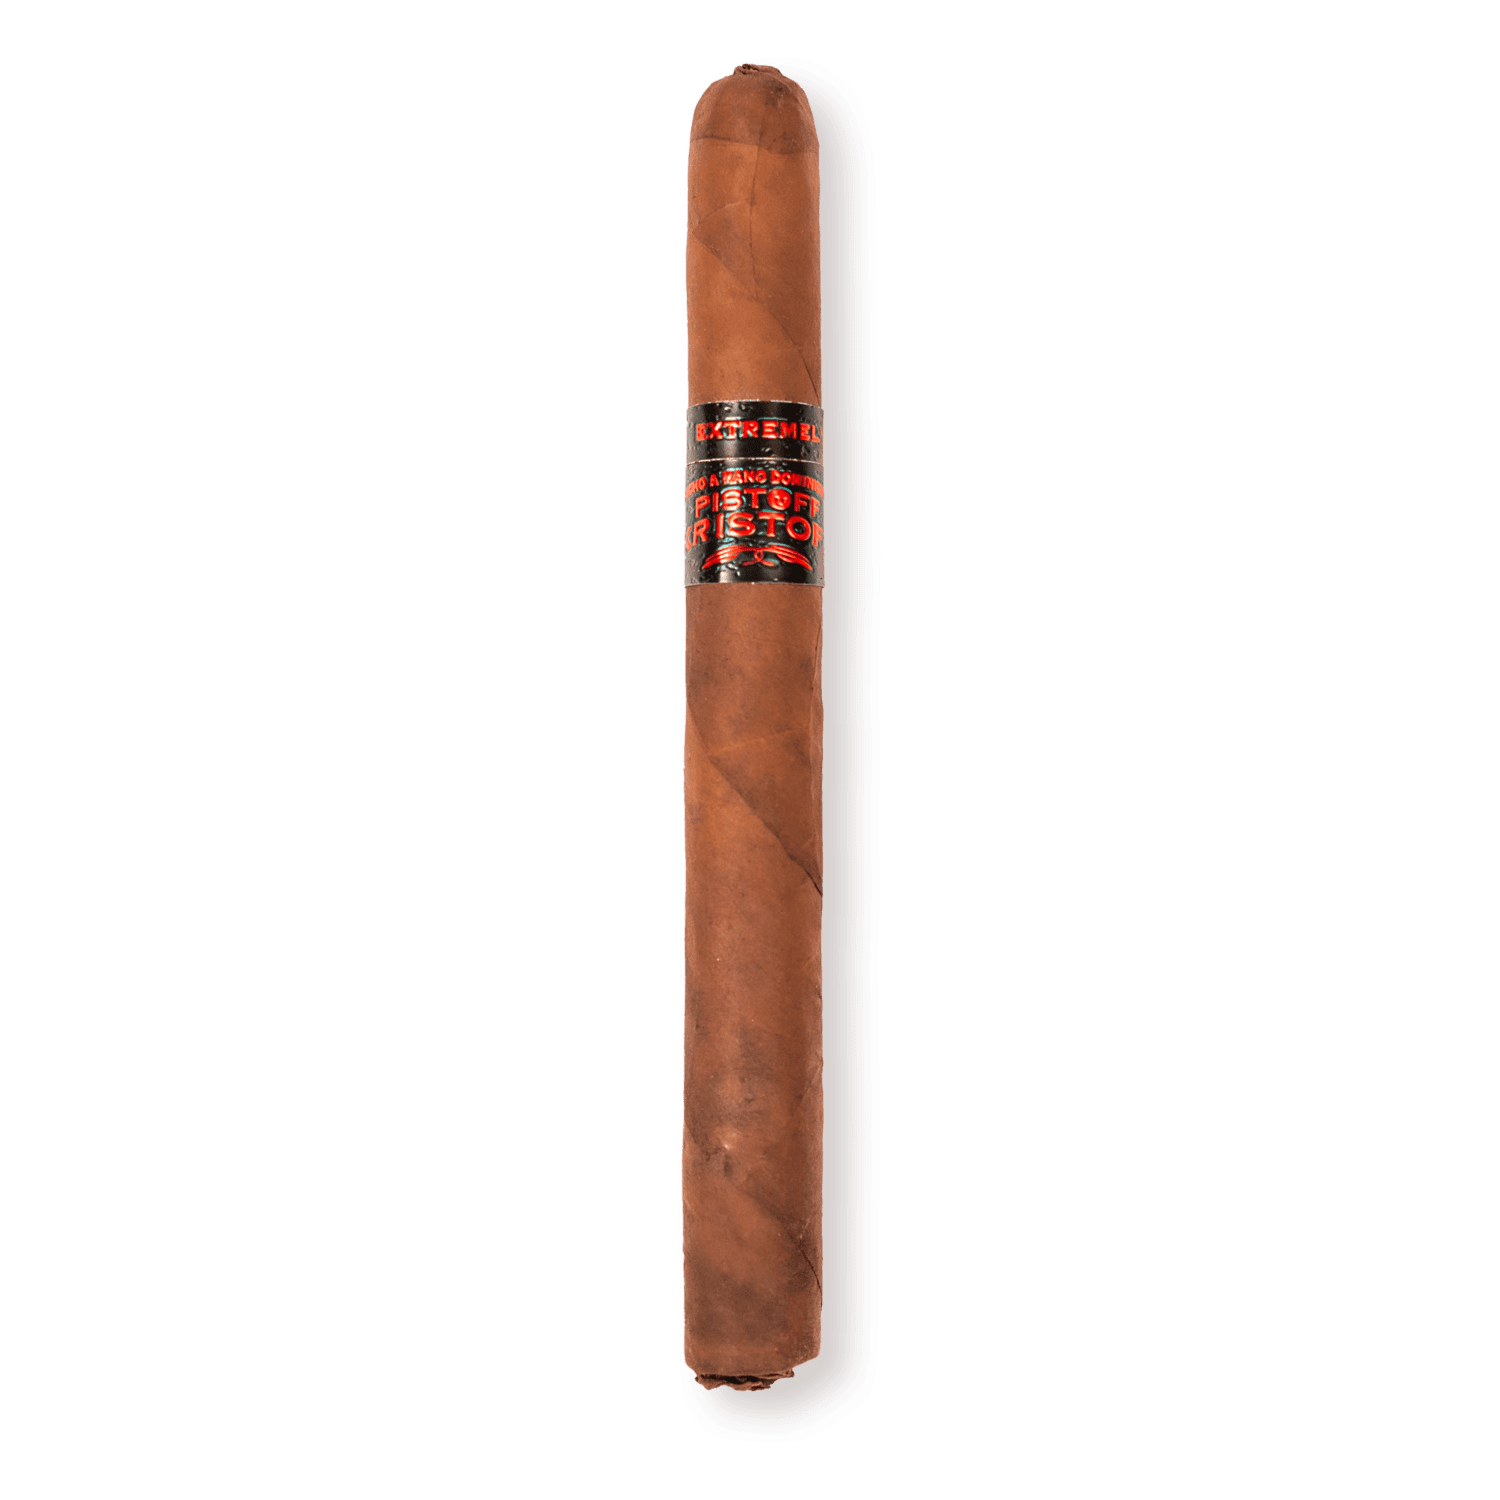 Kristoff Cigars: Pistoff Kristoff Premium Cigar